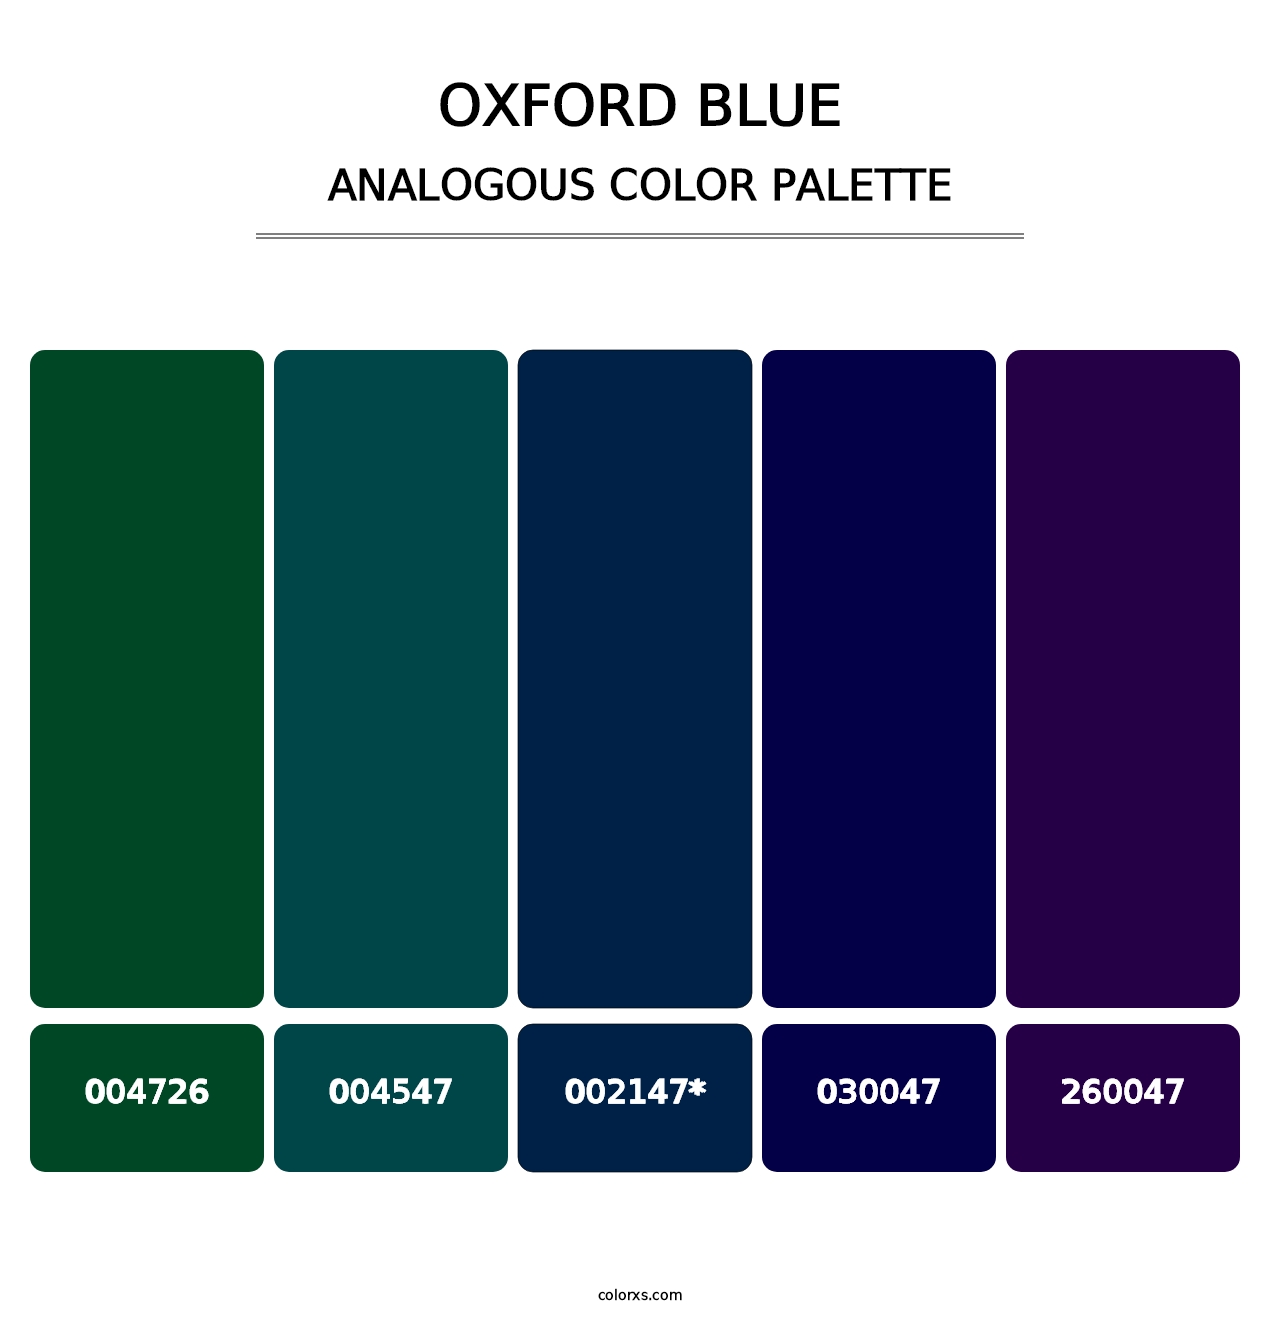 Oxford Blue - Analogous Color Palette